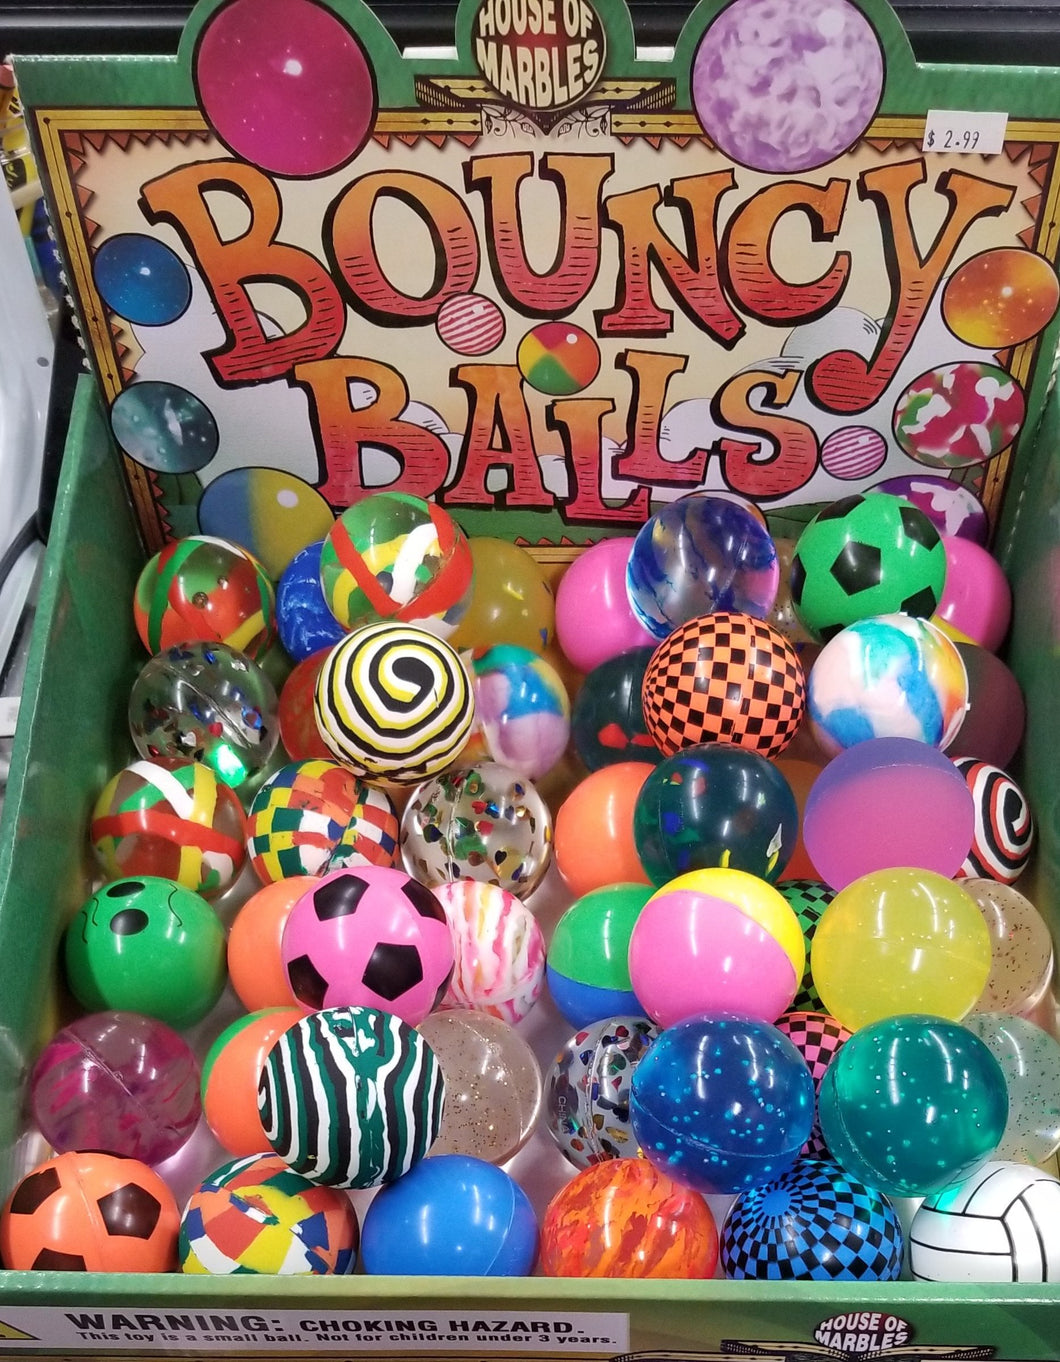 Bouncy Balls, 1 Ball